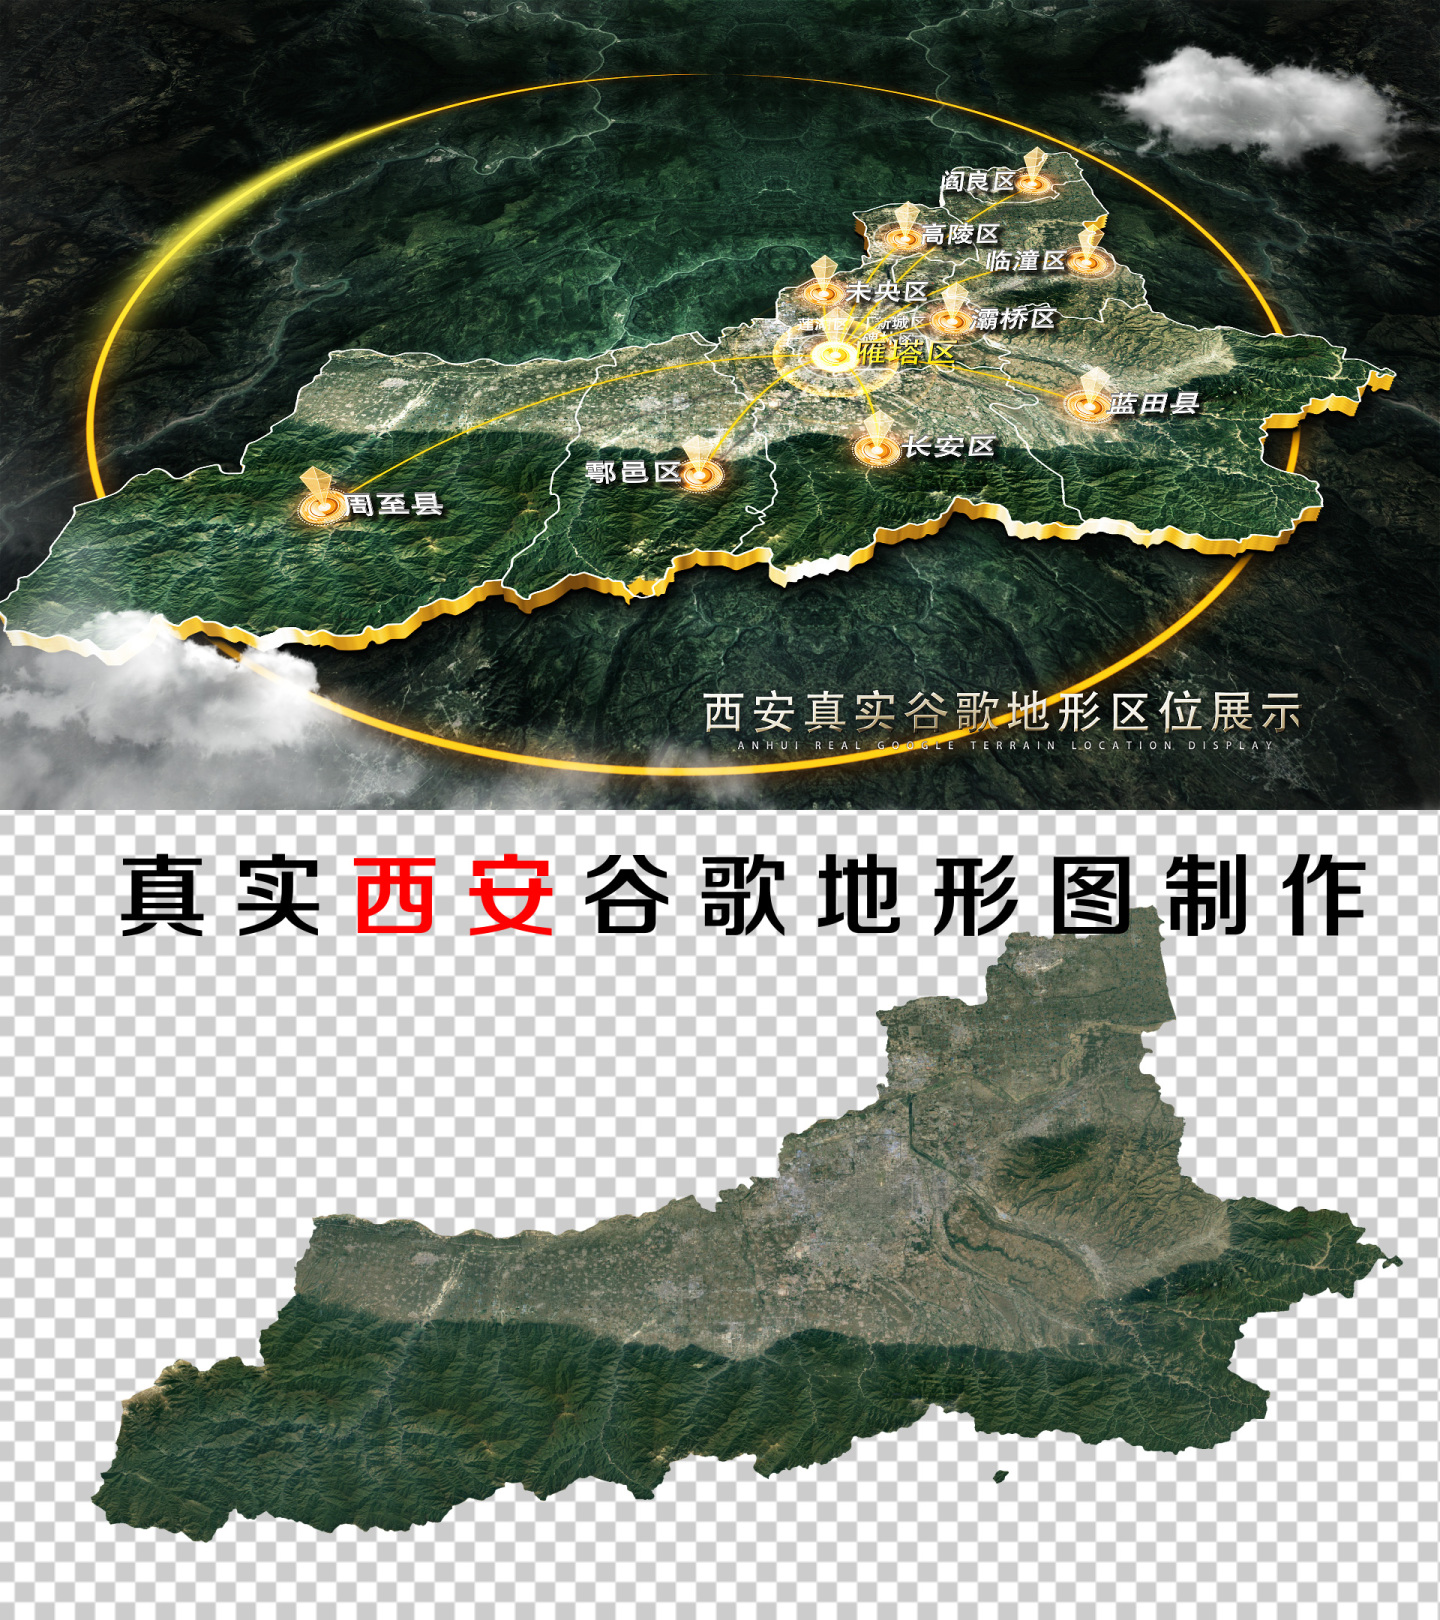 【无插件】西安区位谷歌真实地形图